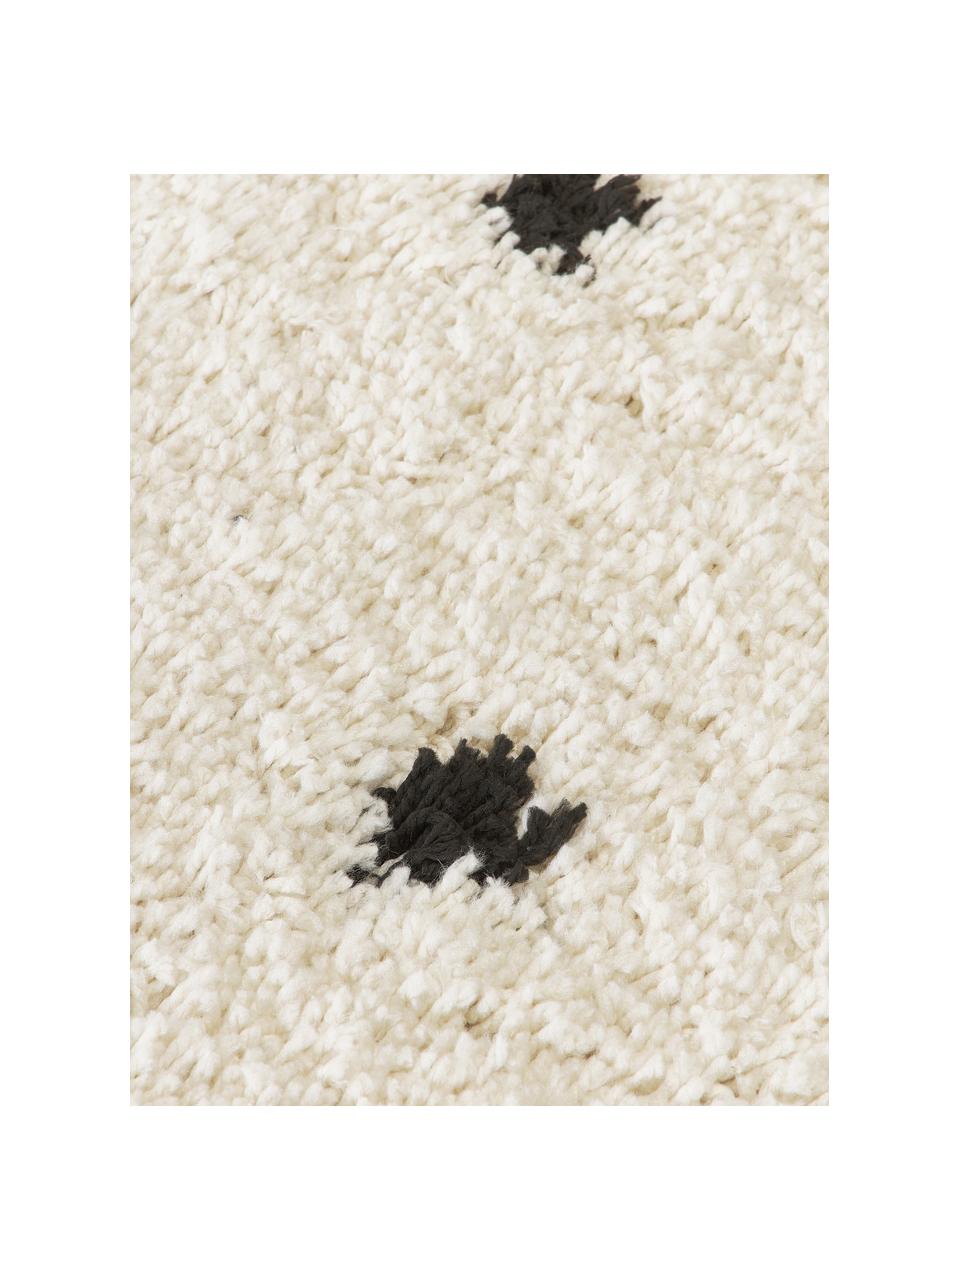 Runder flauschiger Hochflor-Teppich Ayana, gepunktet, 100 % Polyester, Hellbeige, Schwarz, Ø 120 cm (Grösse S)